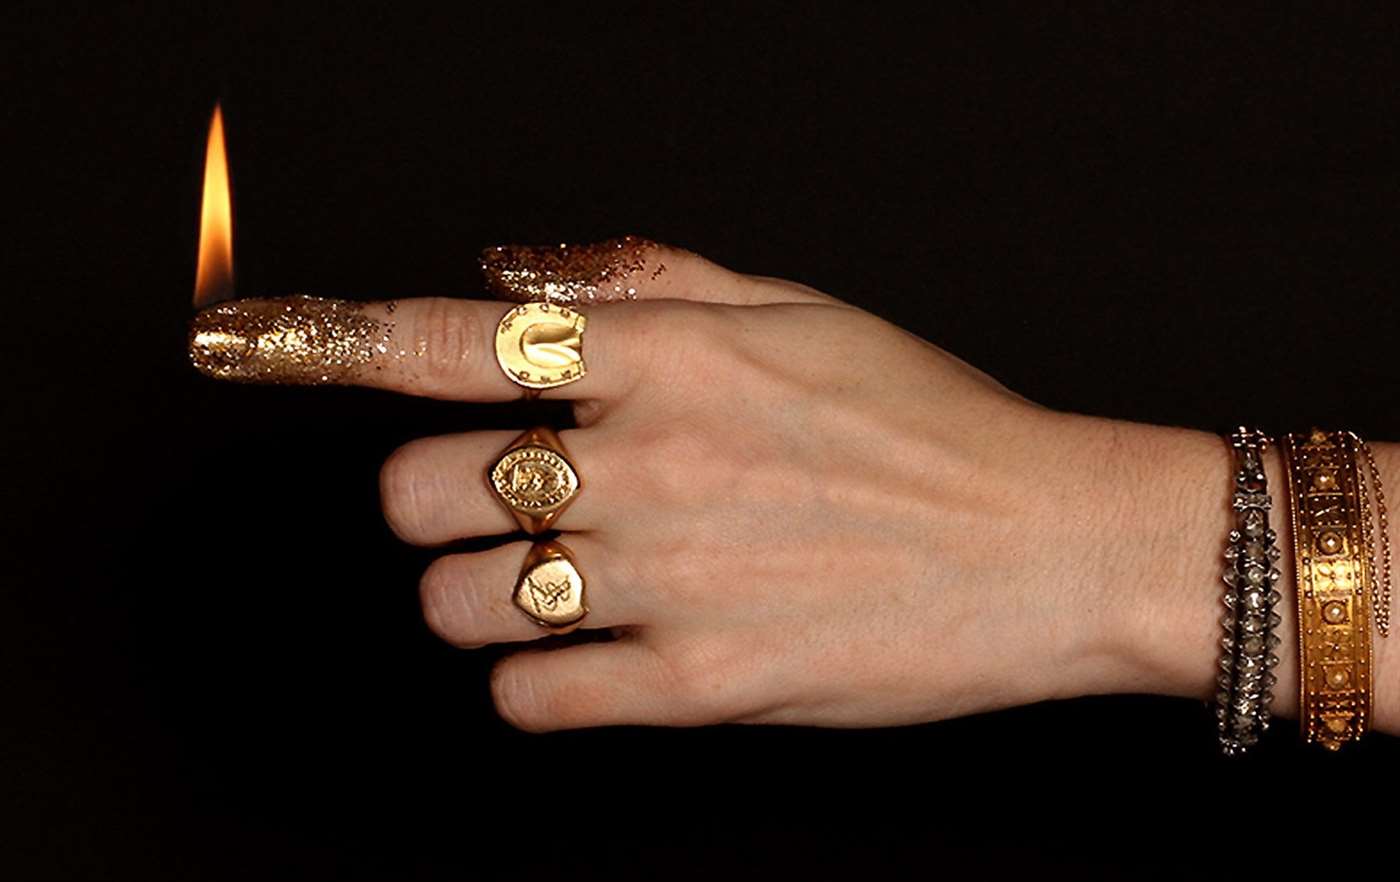 Tay đeo một vài chiếc nhẫn Erica Weiner cổ điển.  Ngón trỏ được dát vàng lấp lánh và được thắp sáng như một ngọn nến.